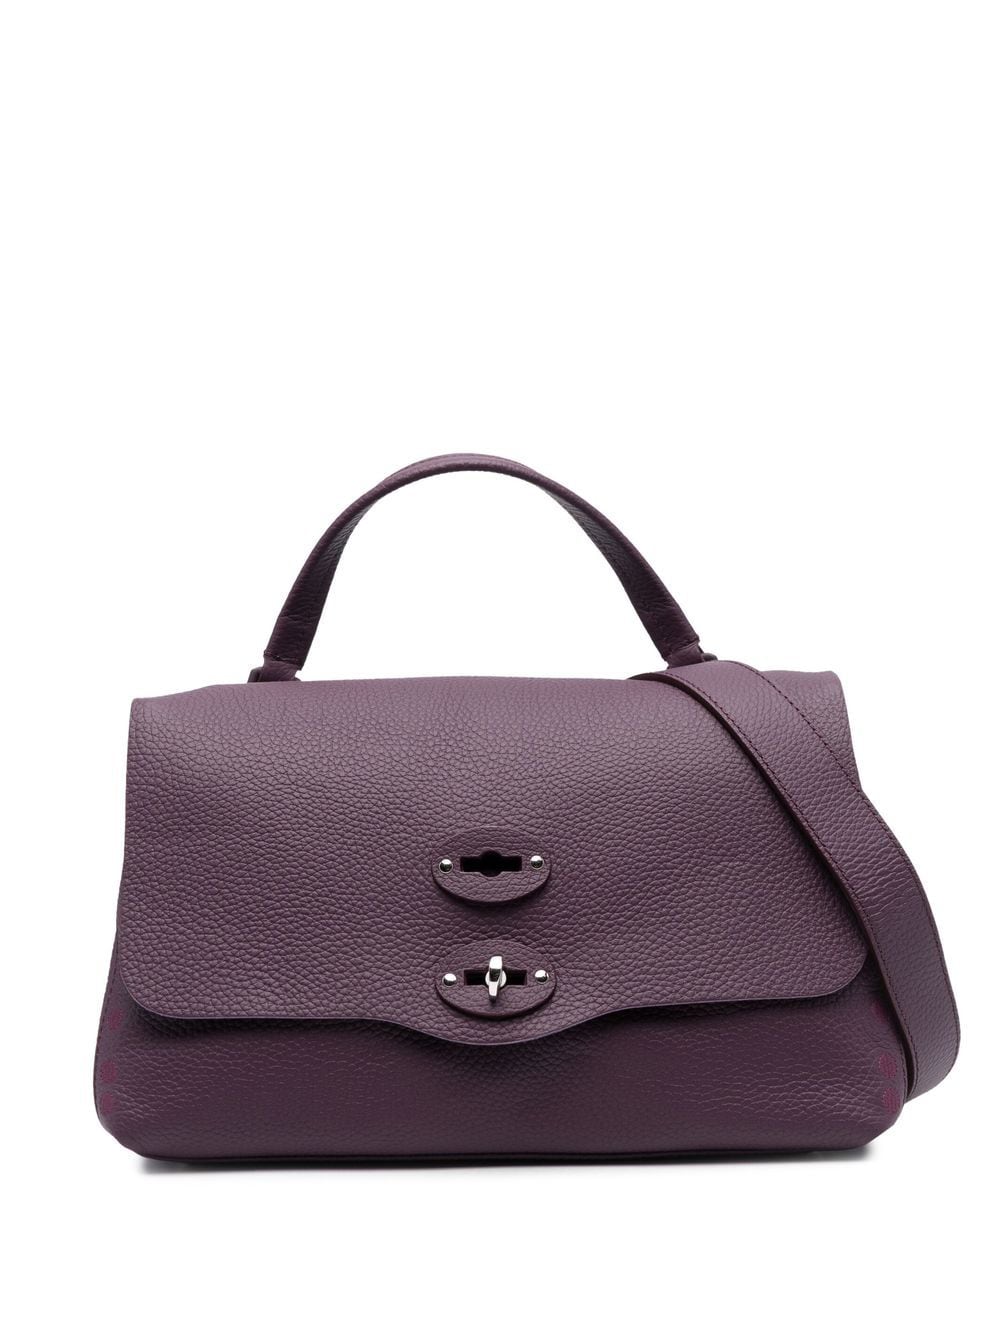 Zanellato grained leather tote bag - Purple von Zanellato